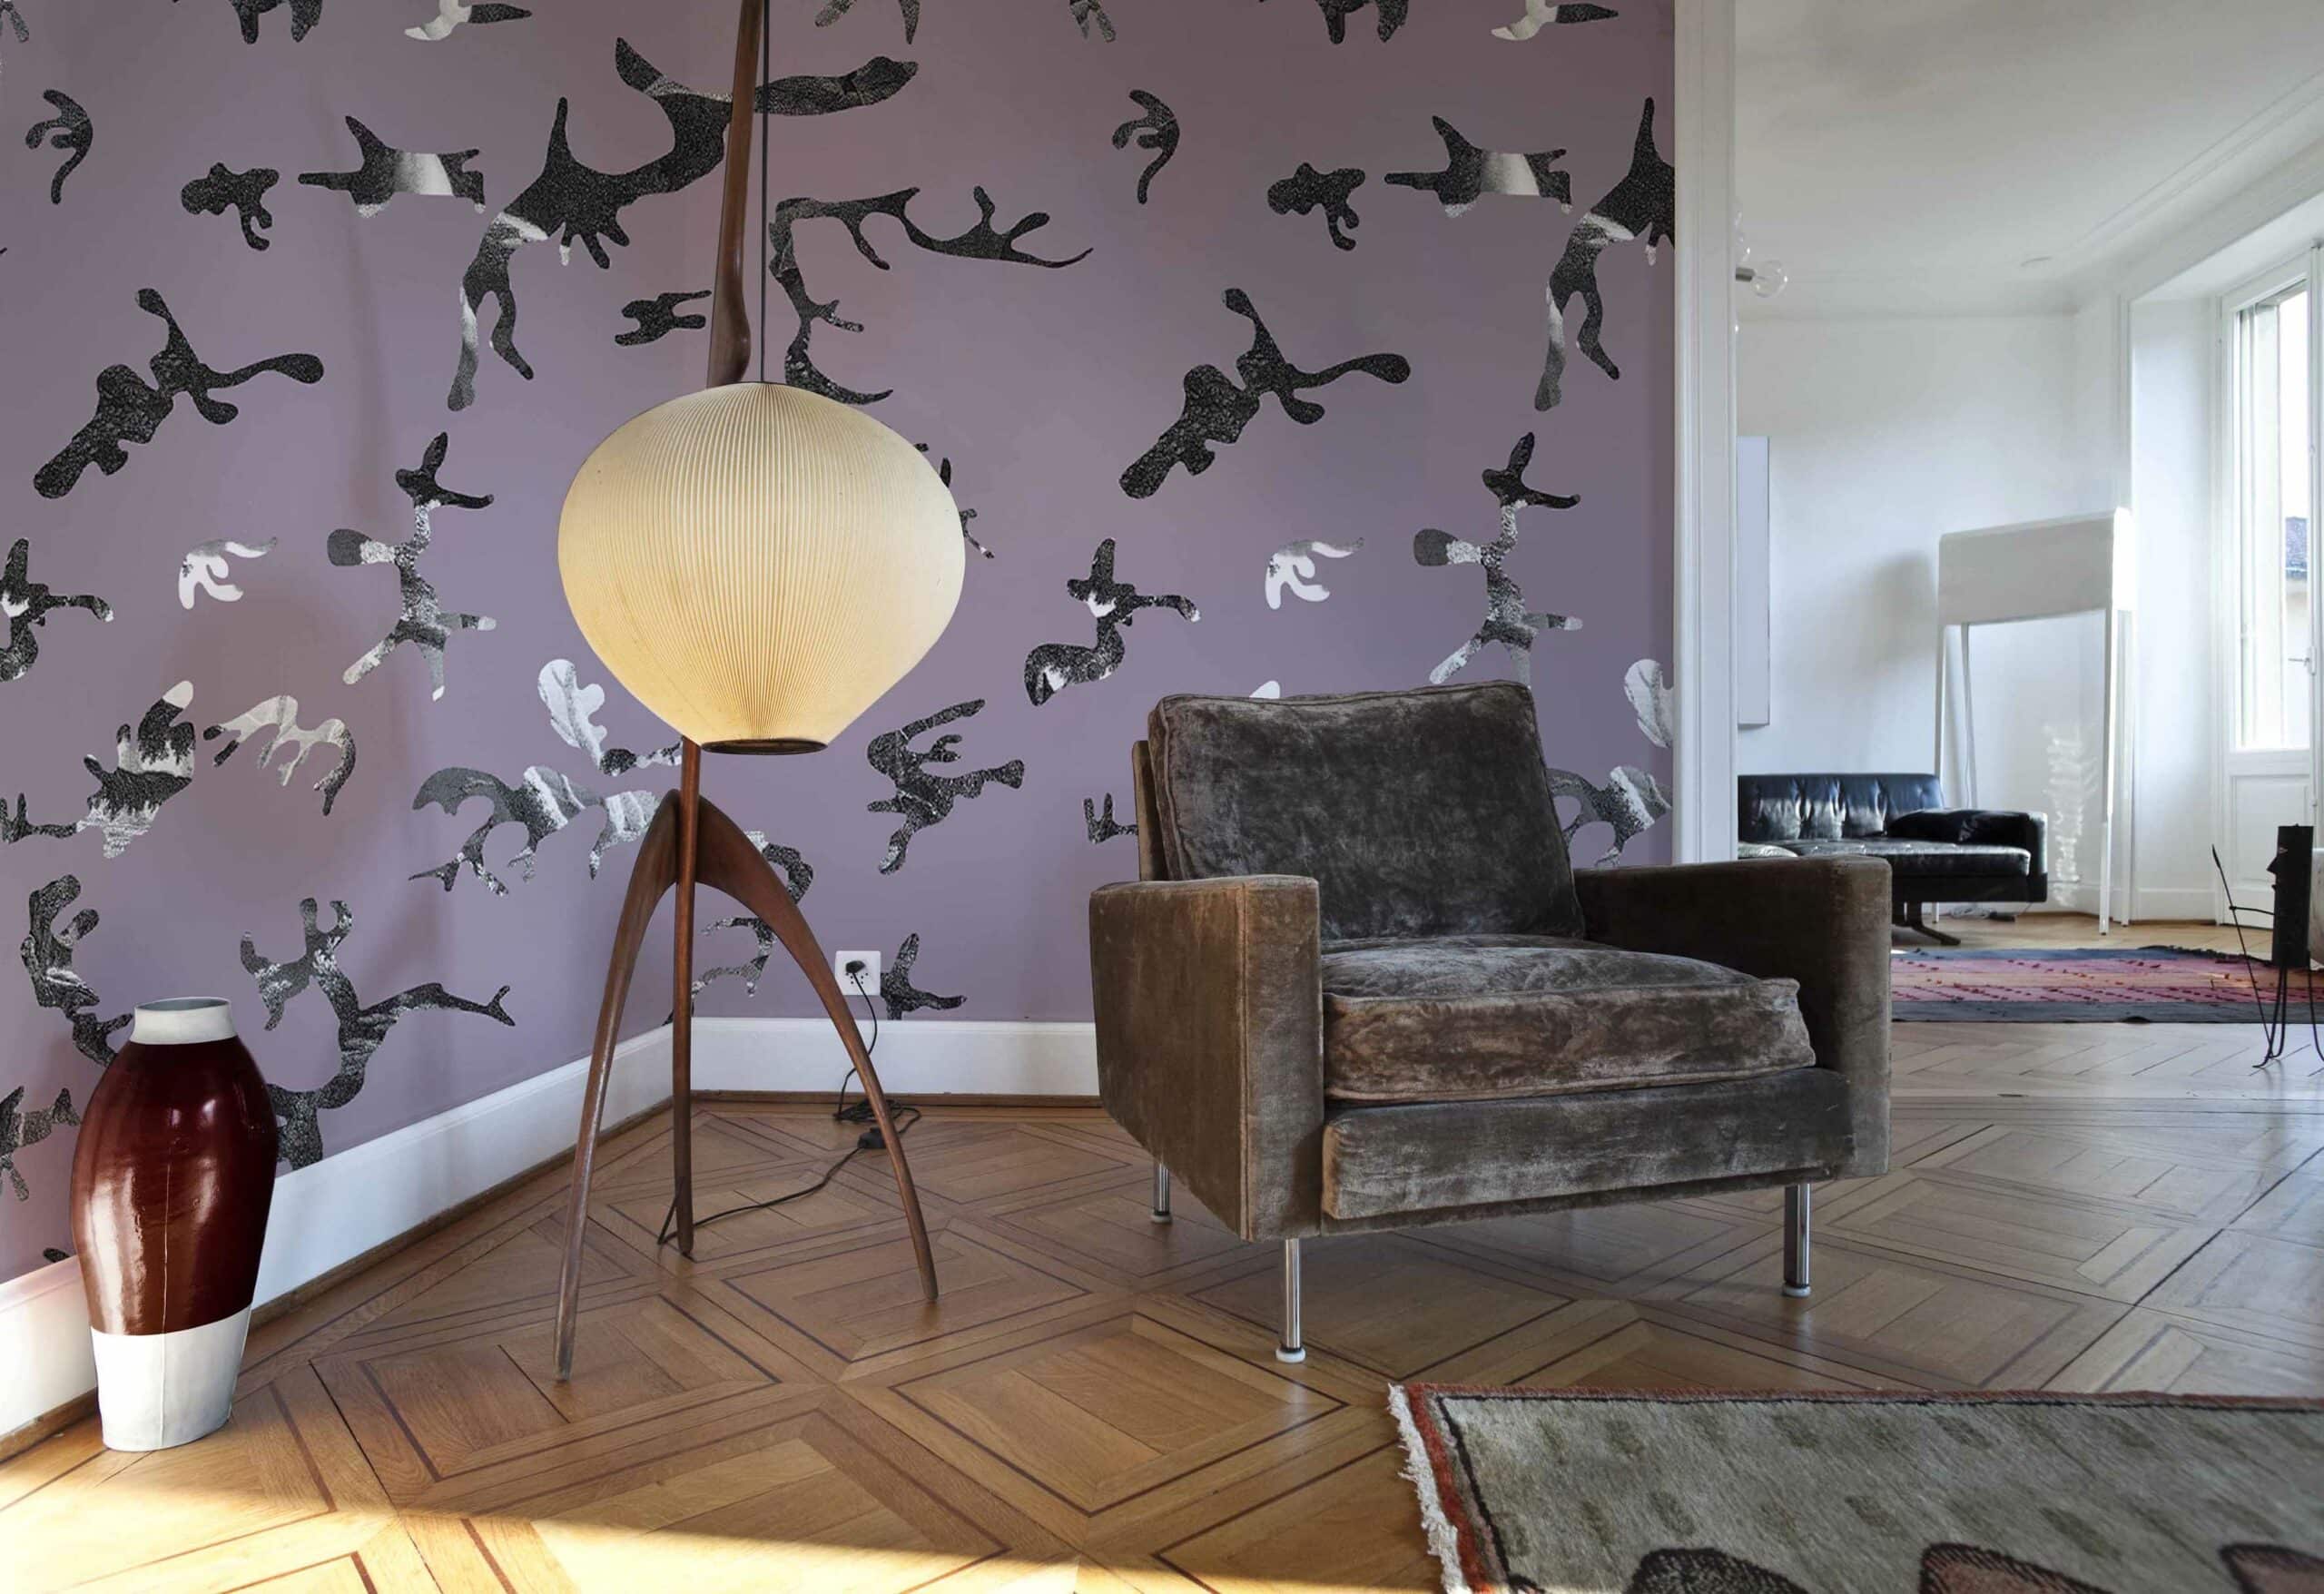 Find-me-in-the-Dark-Retro-Rosa-MaVoix-Wallpaper-by-Magnus-Gjoen-living-room-styling-Spazio-Miscellanea